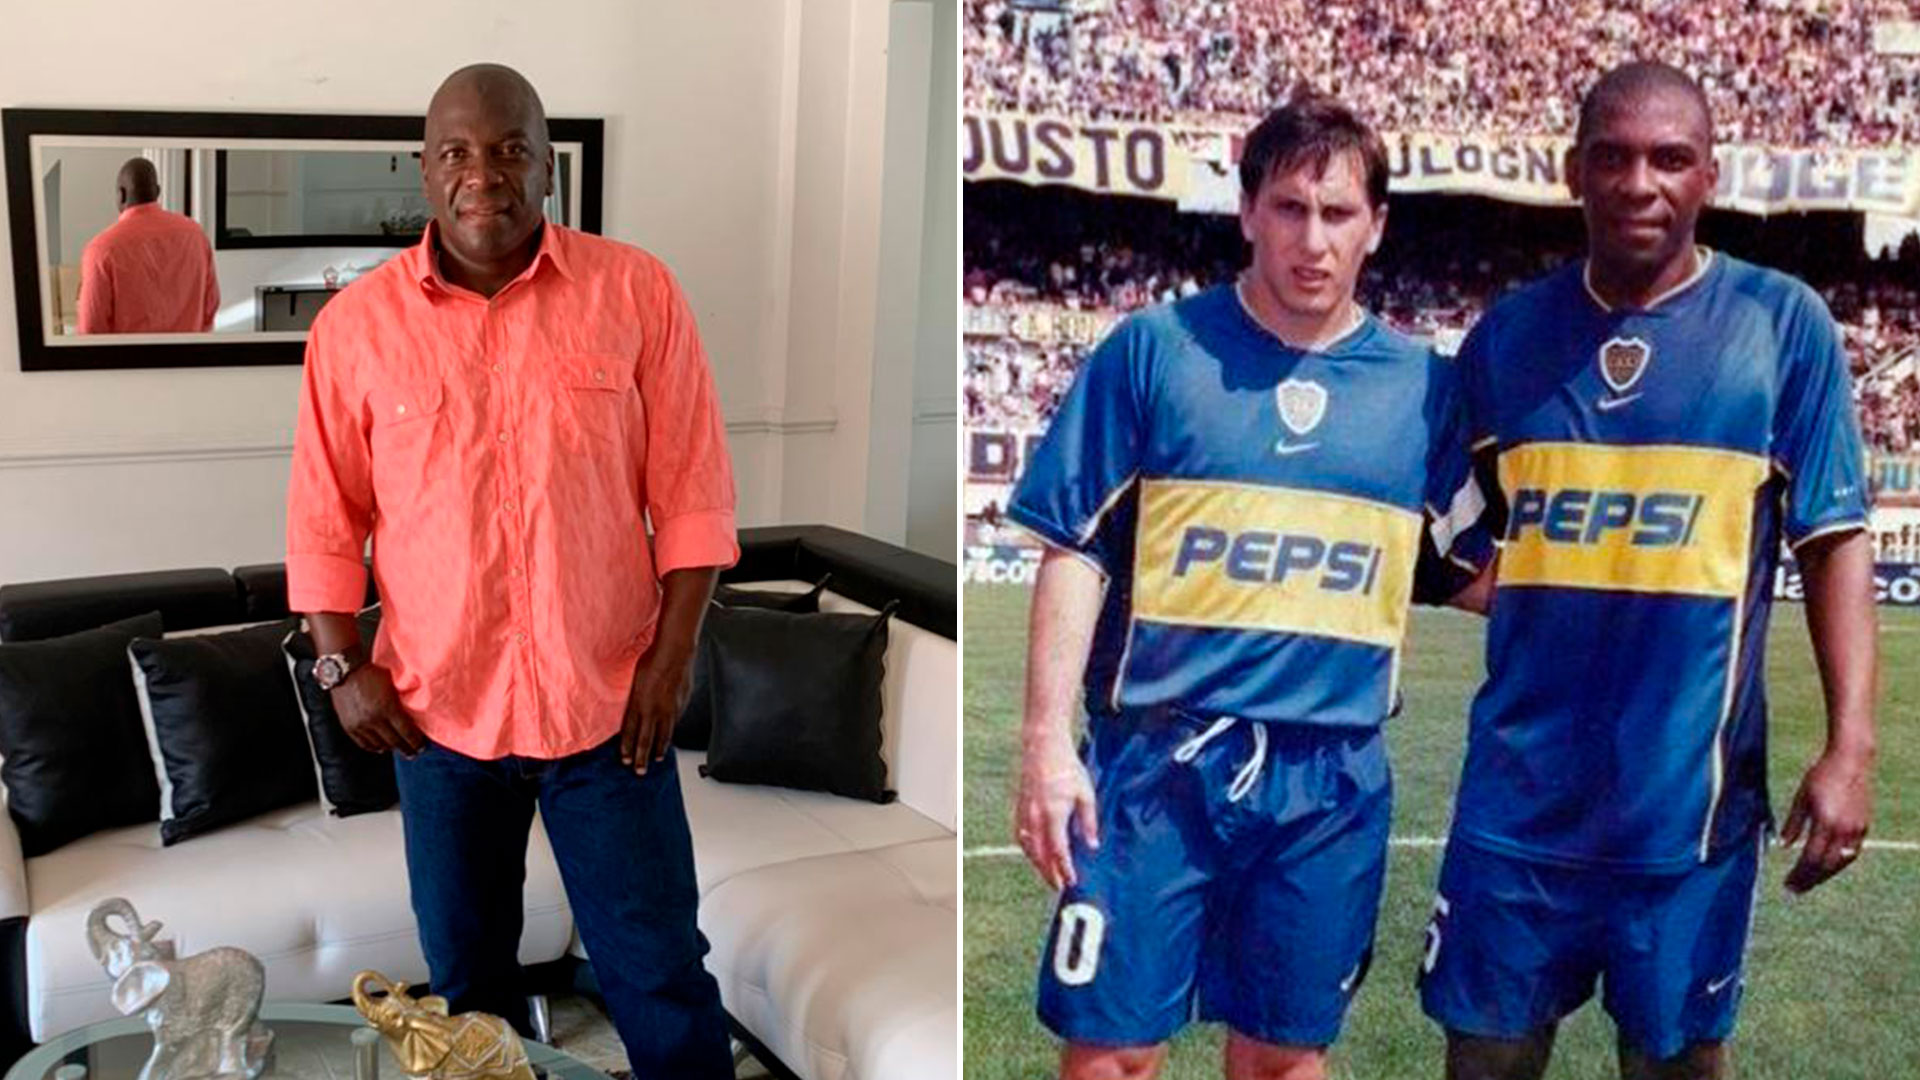 Dinas en la actualidad y con la camiseta de Boca, junto a Cristian Giménez